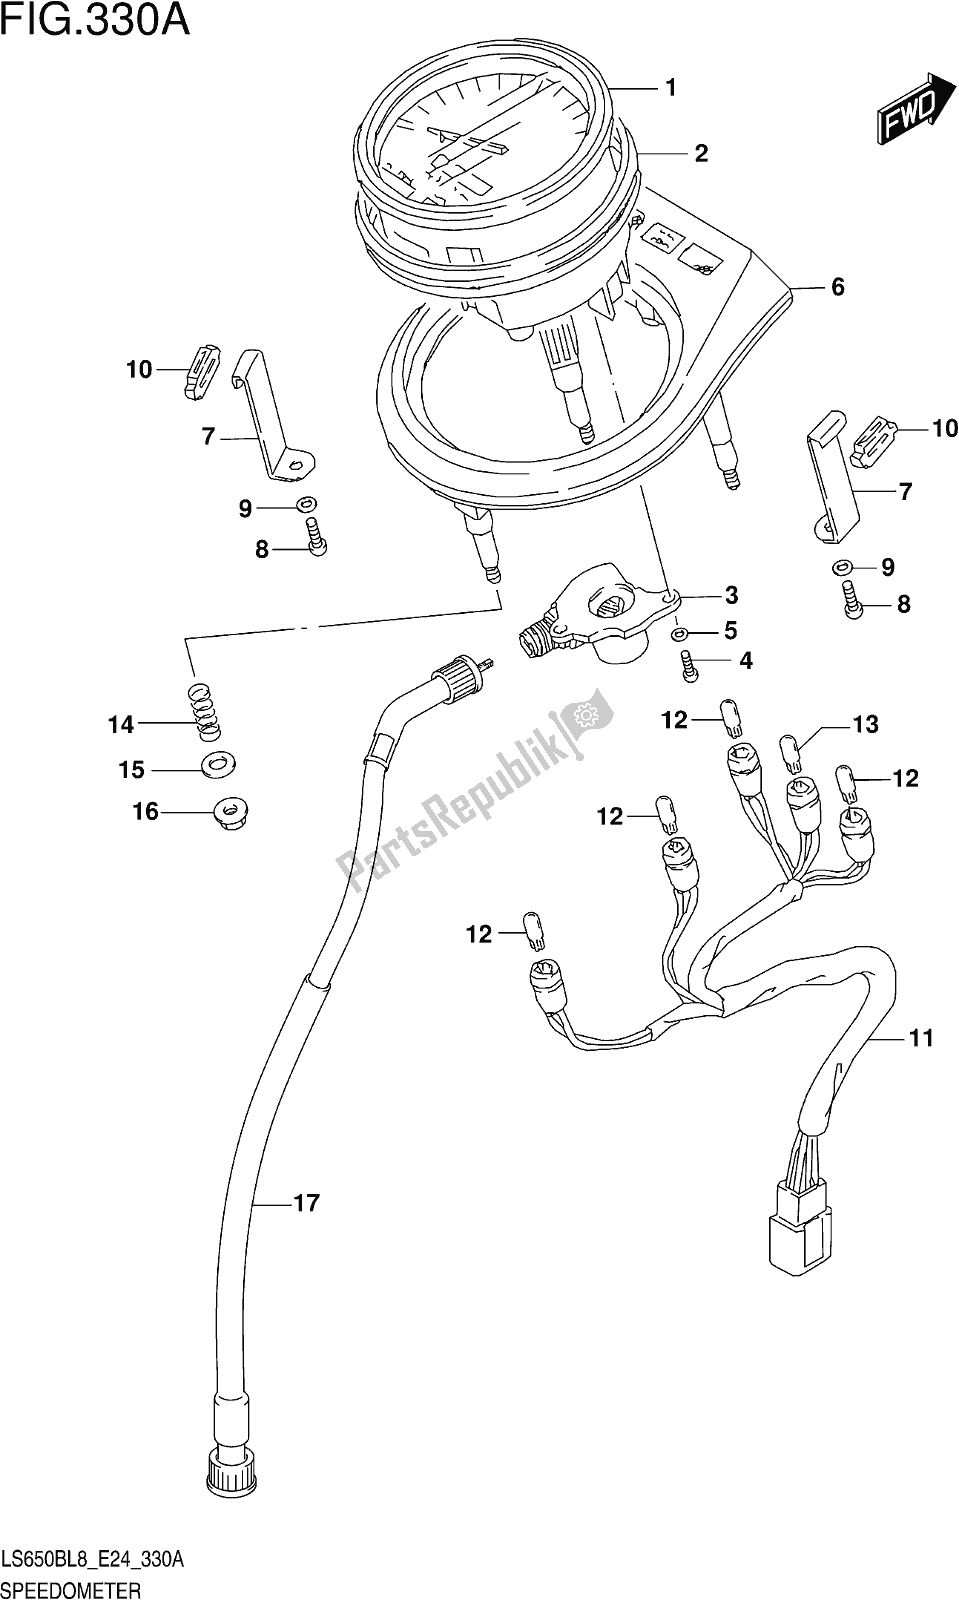 Alle onderdelen voor de Fig. 330a Speedometer van de Suzuki LS 650B 2018